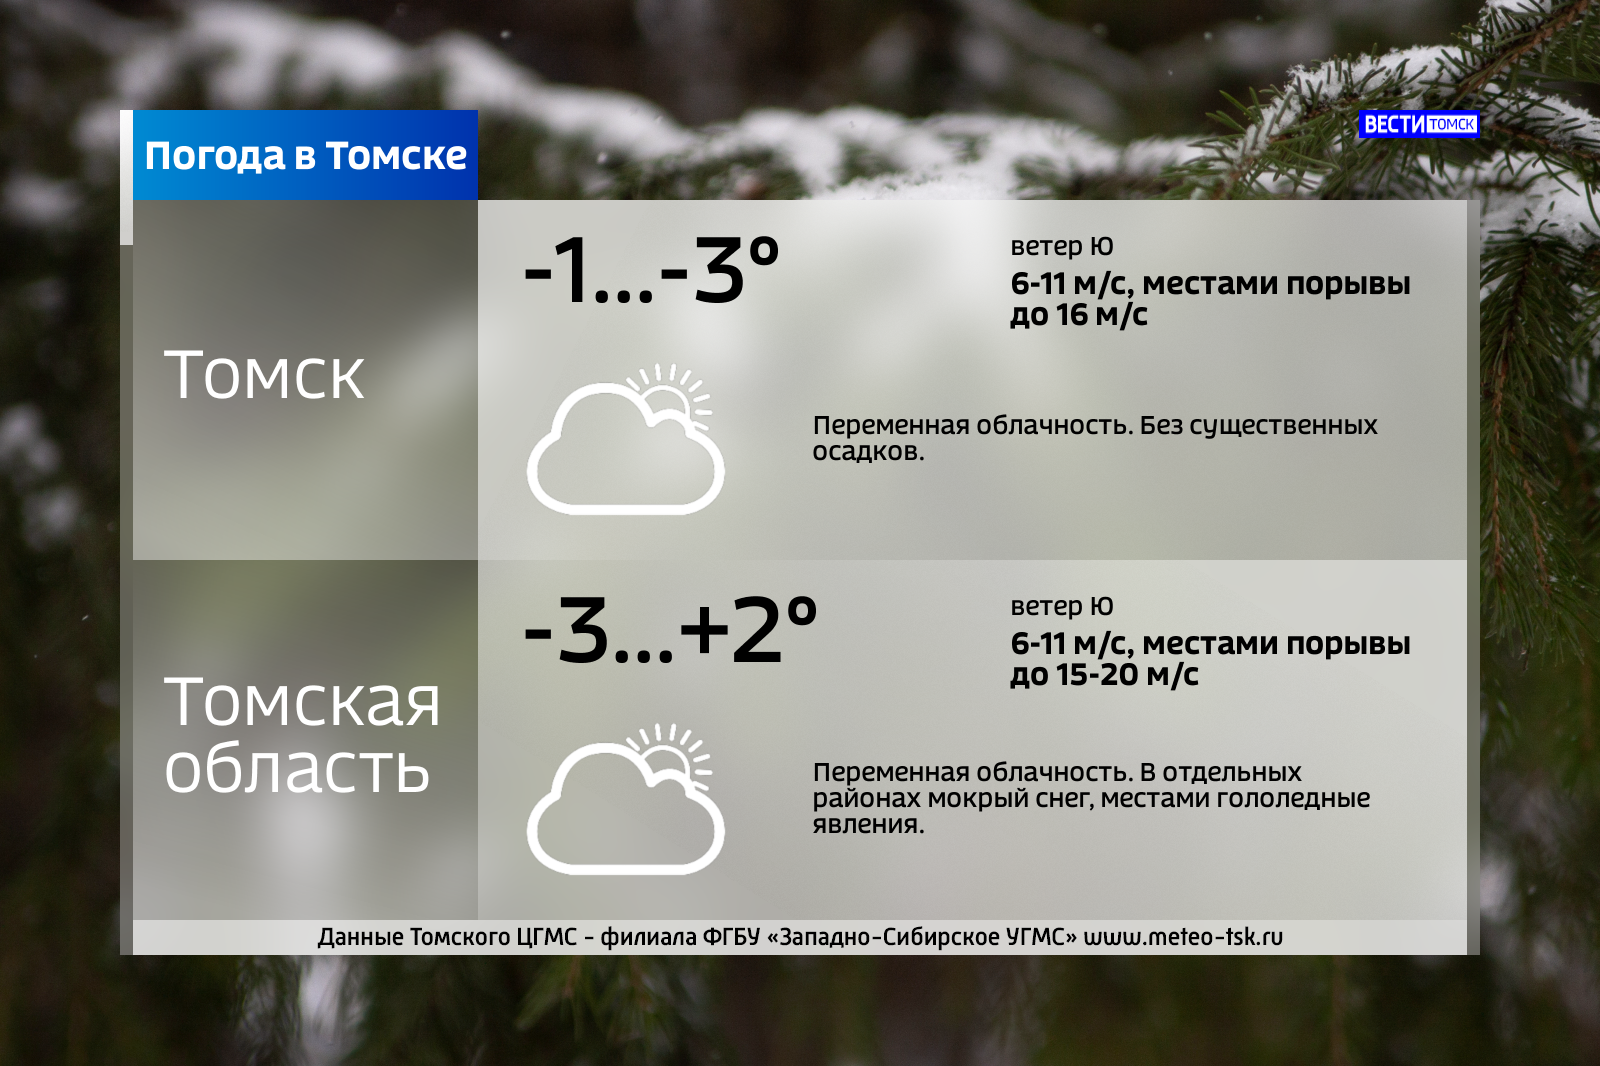 Погода в томском. Погода в Томске. Прогноз погоды в Томске. По́года в Томске. Погода в Томске сегодня.